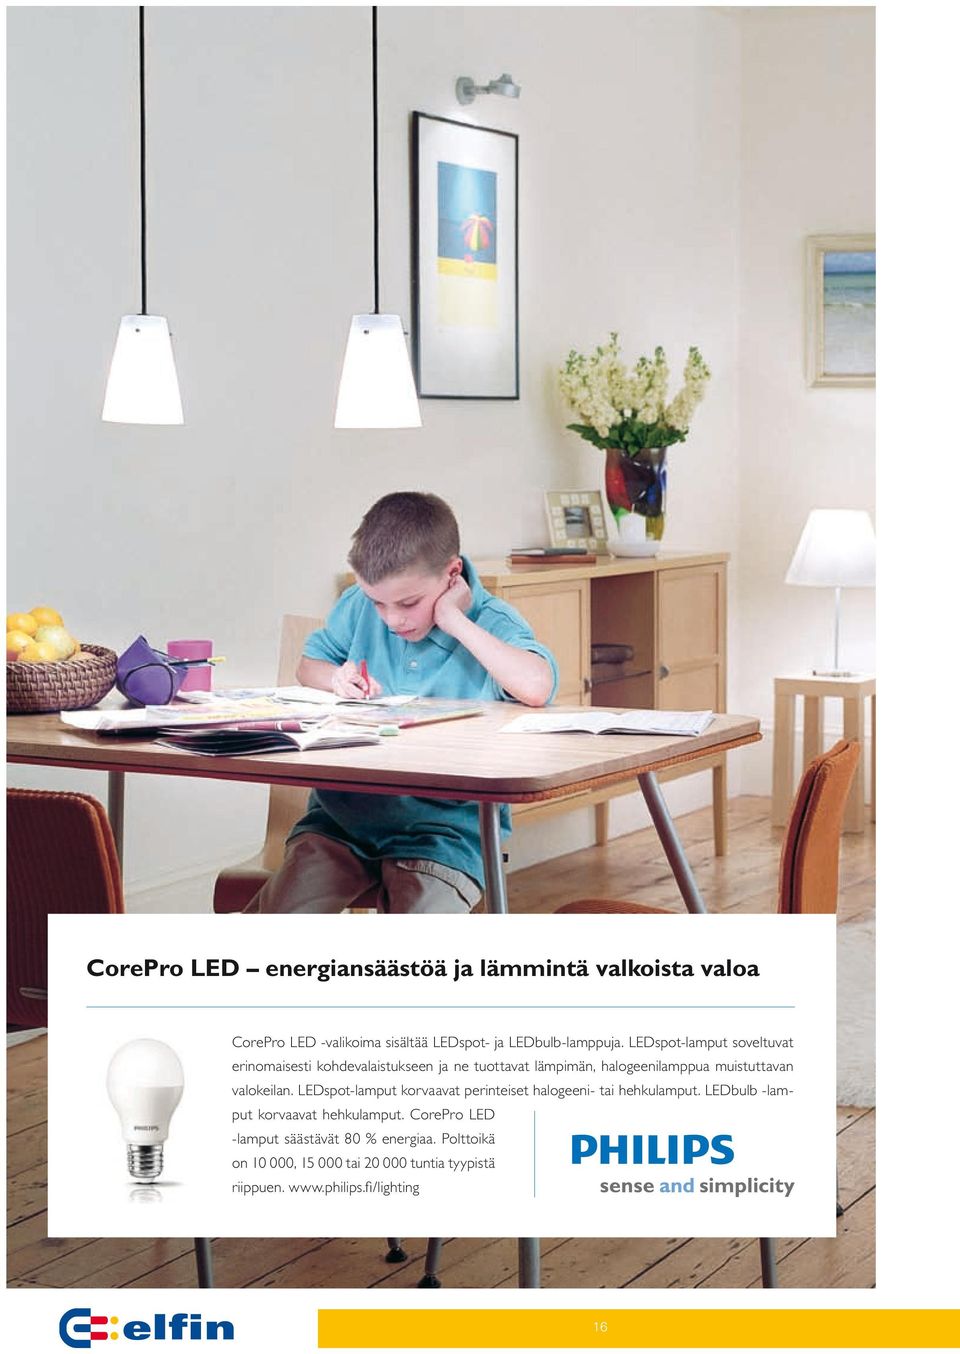 LEDspot-lamput korvaavat perinteiset halogeeni- tai hehkulamput. LEDbulb -lamput korvaavat hehku lamput.